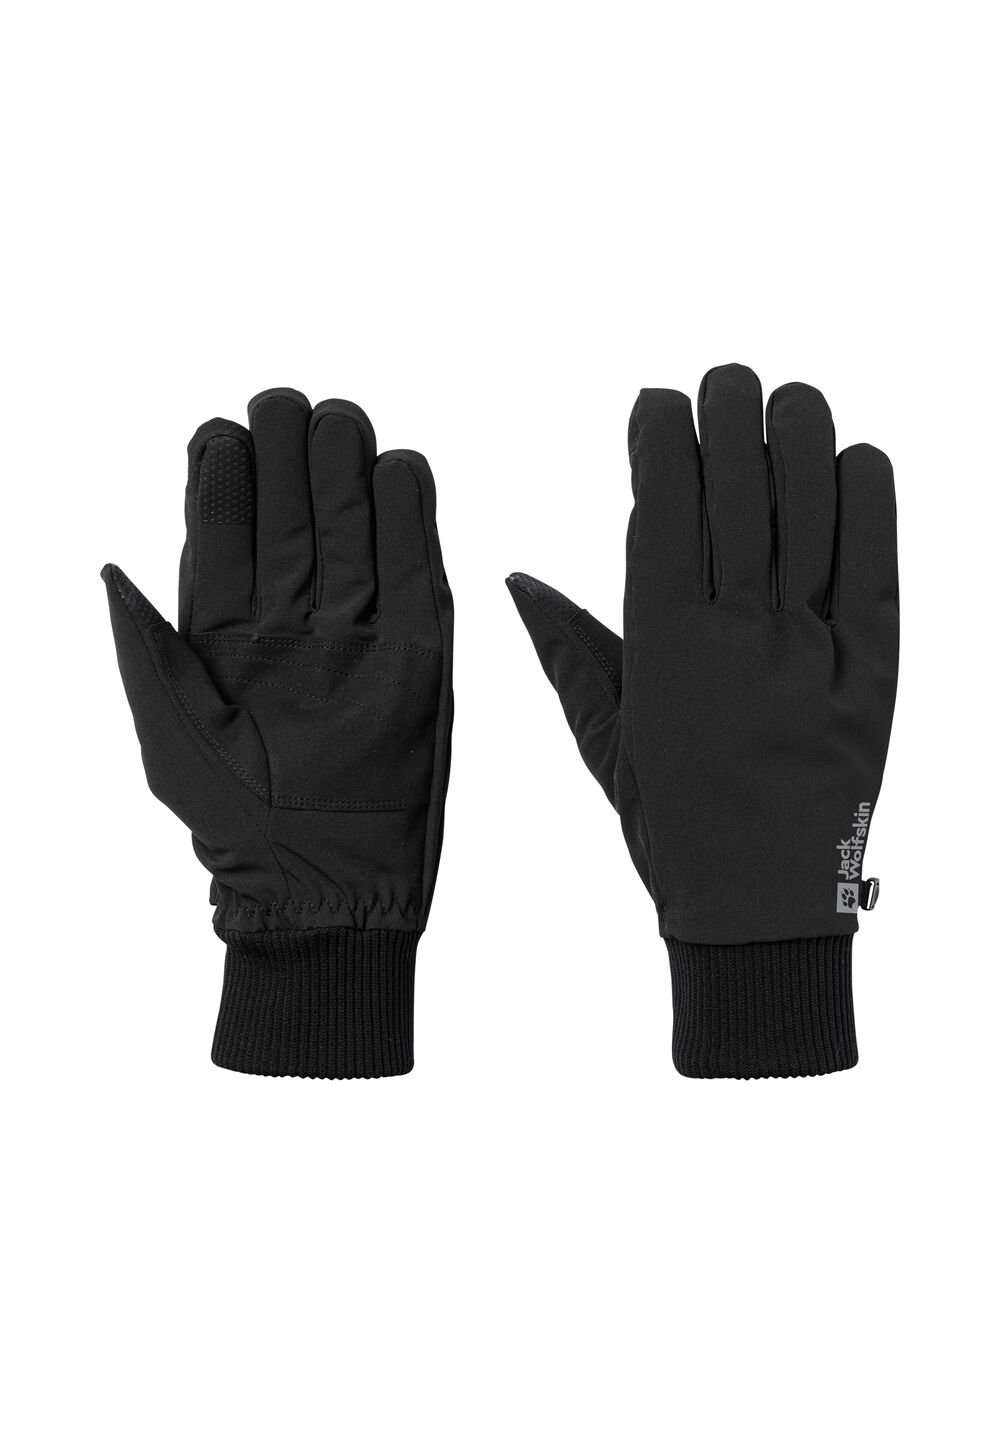 Jack Wolfskin Supersonic Extended Version Glove Winddichte handschoenen M zwart black